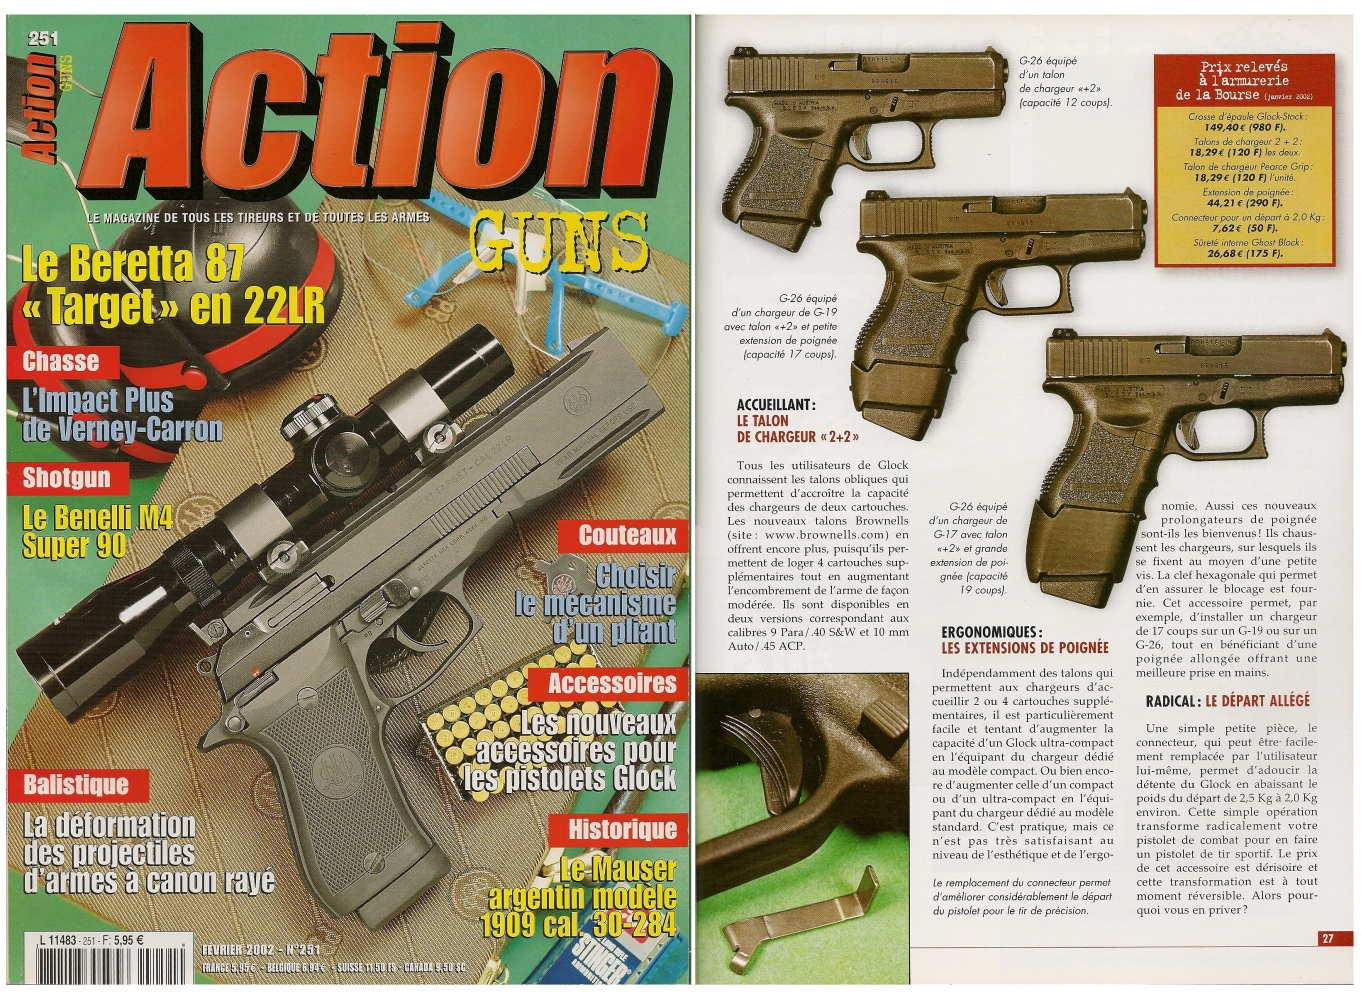 Le banc d'essai des nouveaux accessoires destinés aux pistolets Glock a été publié sur 5 pages dans le magazine Action Guns n° 251 (février 2002). 